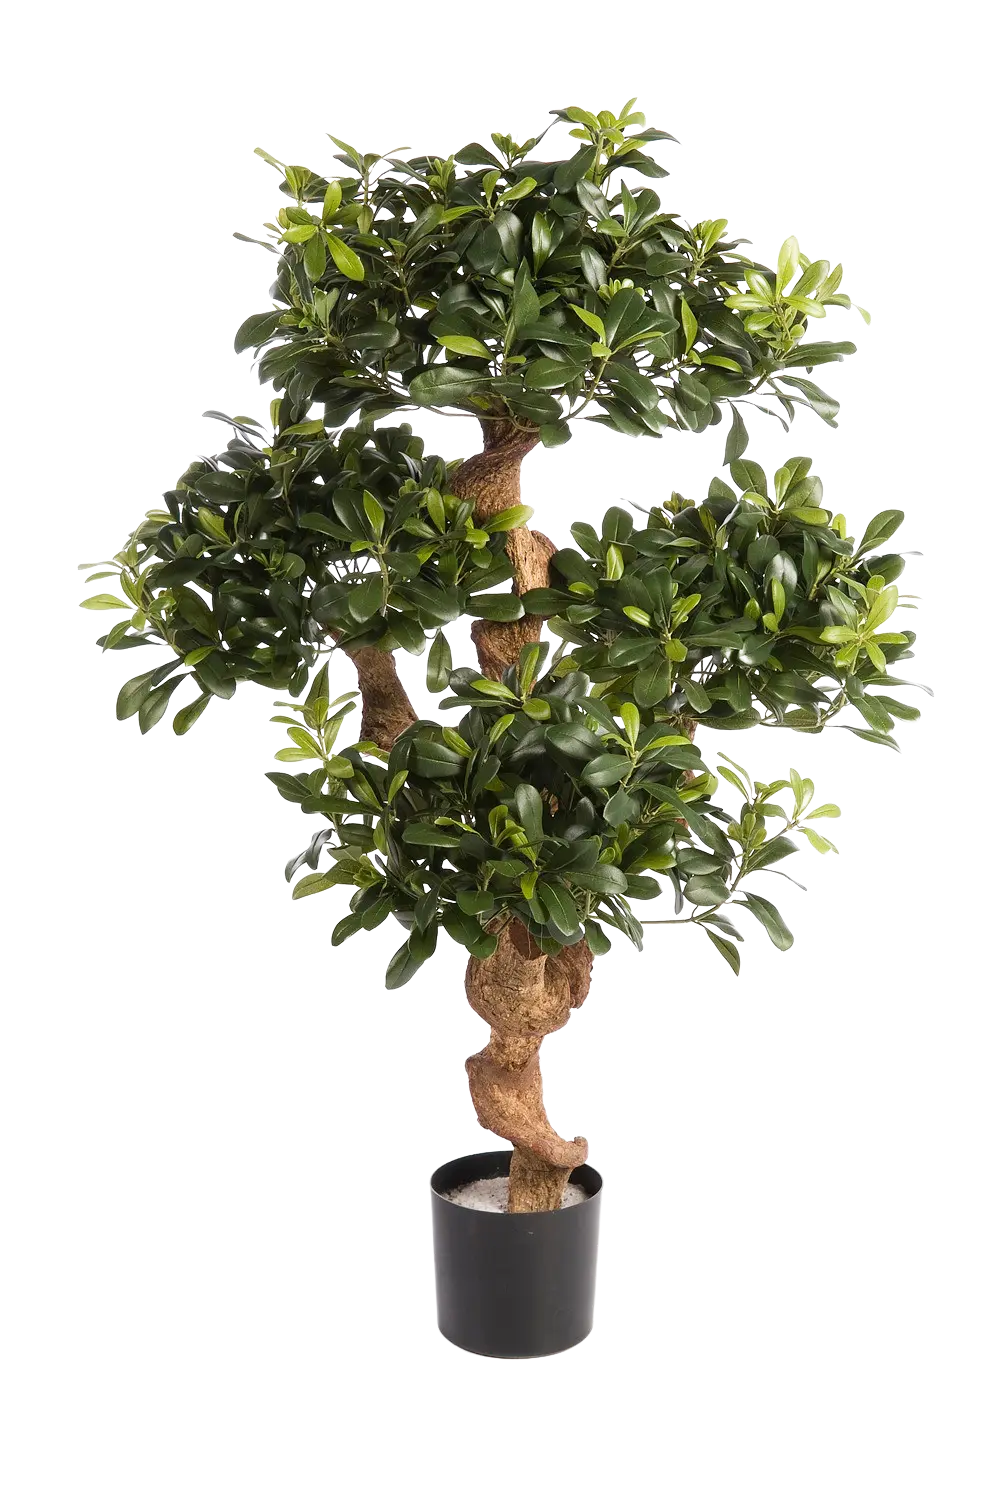 Künstlicher Pittosporum - Pierre auf transparentem Hintergrund mit echt wirkenden Kunstblättern. Diese Kunstpflanze gehört zur Gattung/Familie der "Pittosporum" bzw. "Kunst-Pittosporum".